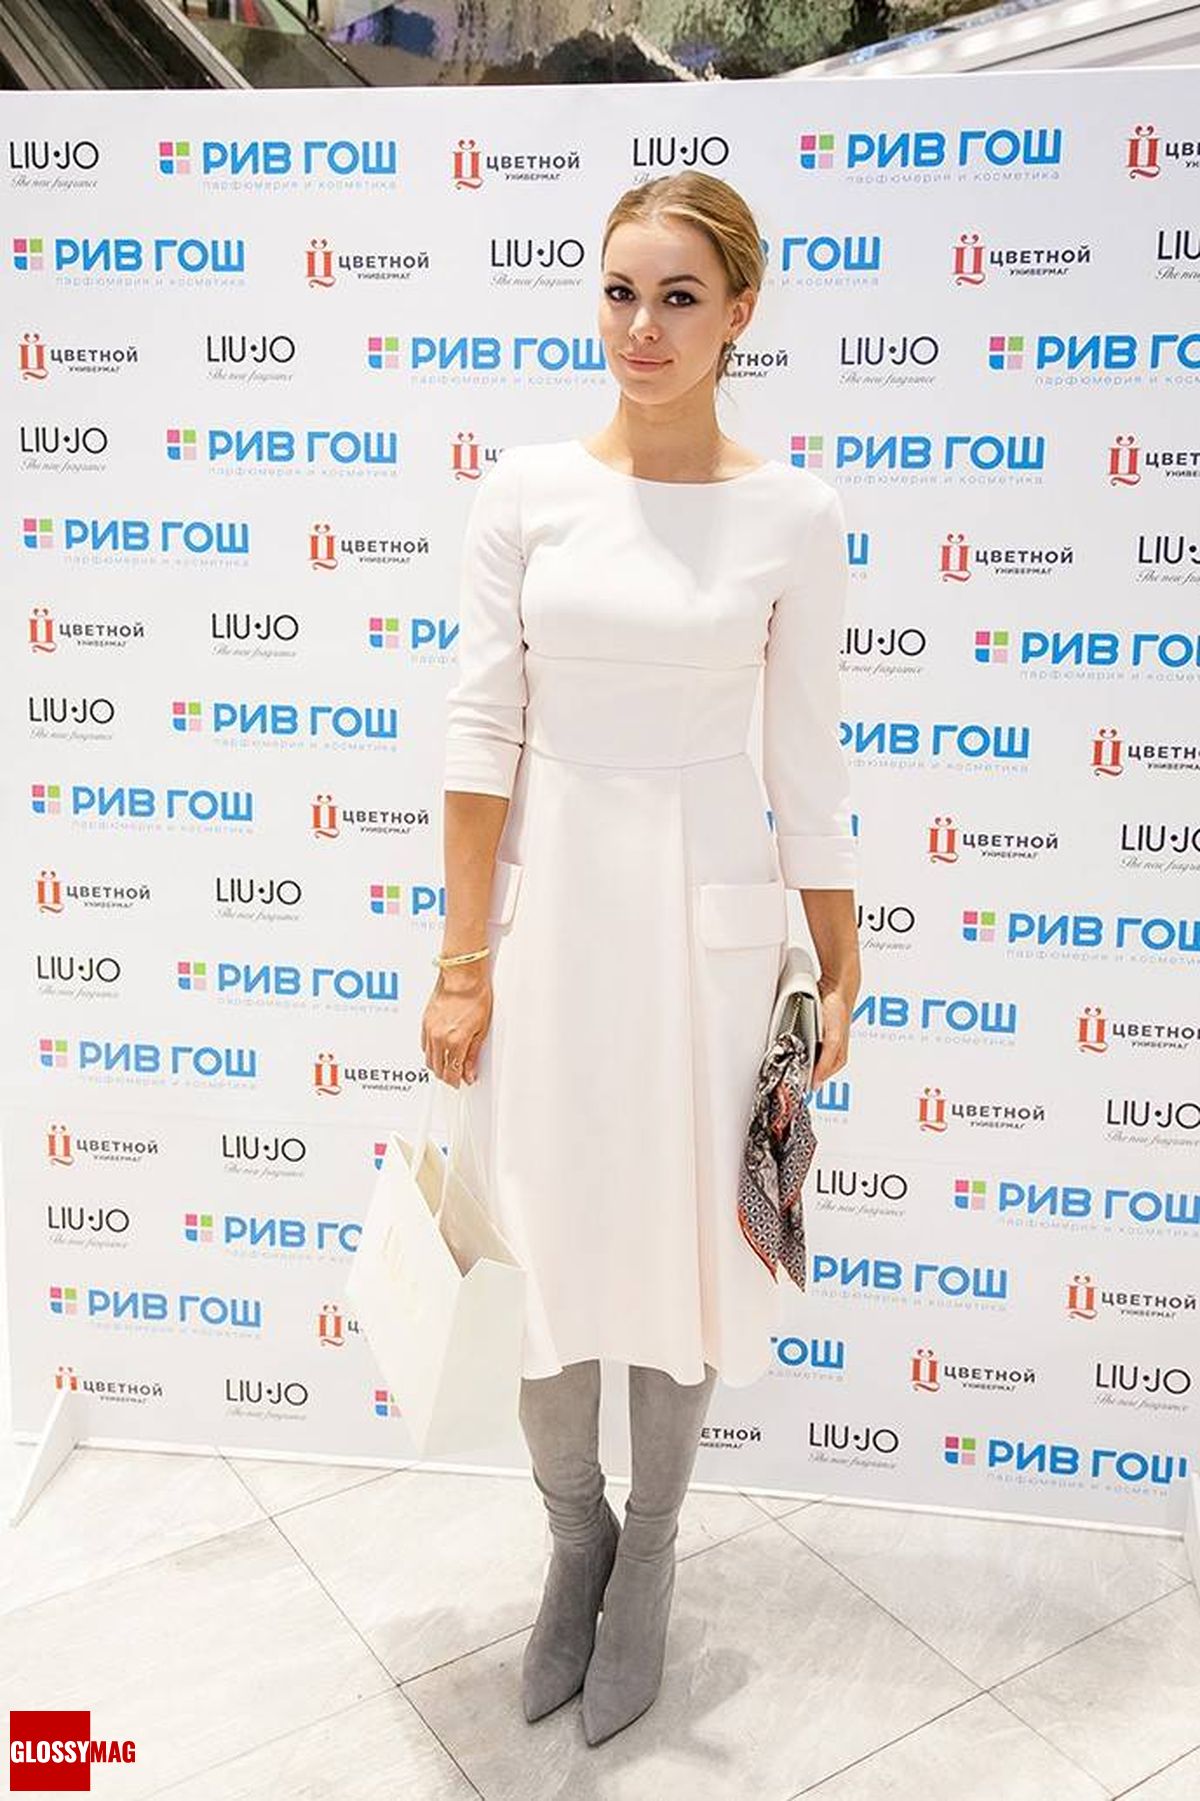 Анастасия Романцова на эксклюзивной премьере парфюмерного бренда Liu Jo в Рив Гош «Цветной», 9 апреля 2015 г.